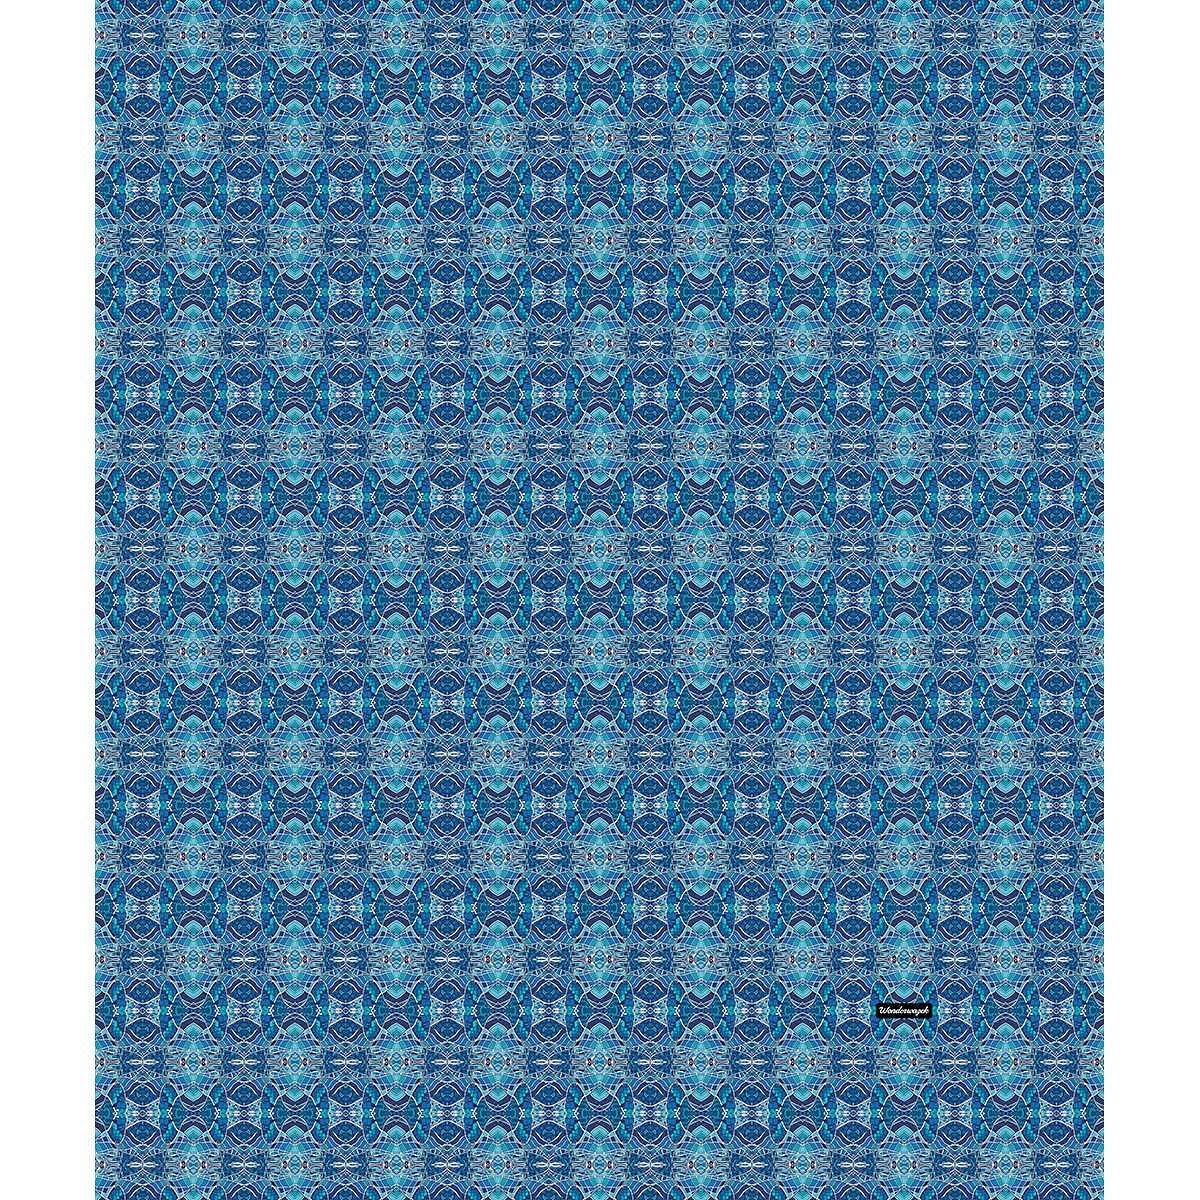 Decke • Wassergeister – Variation 1, blau, weiß - Wonderwazek